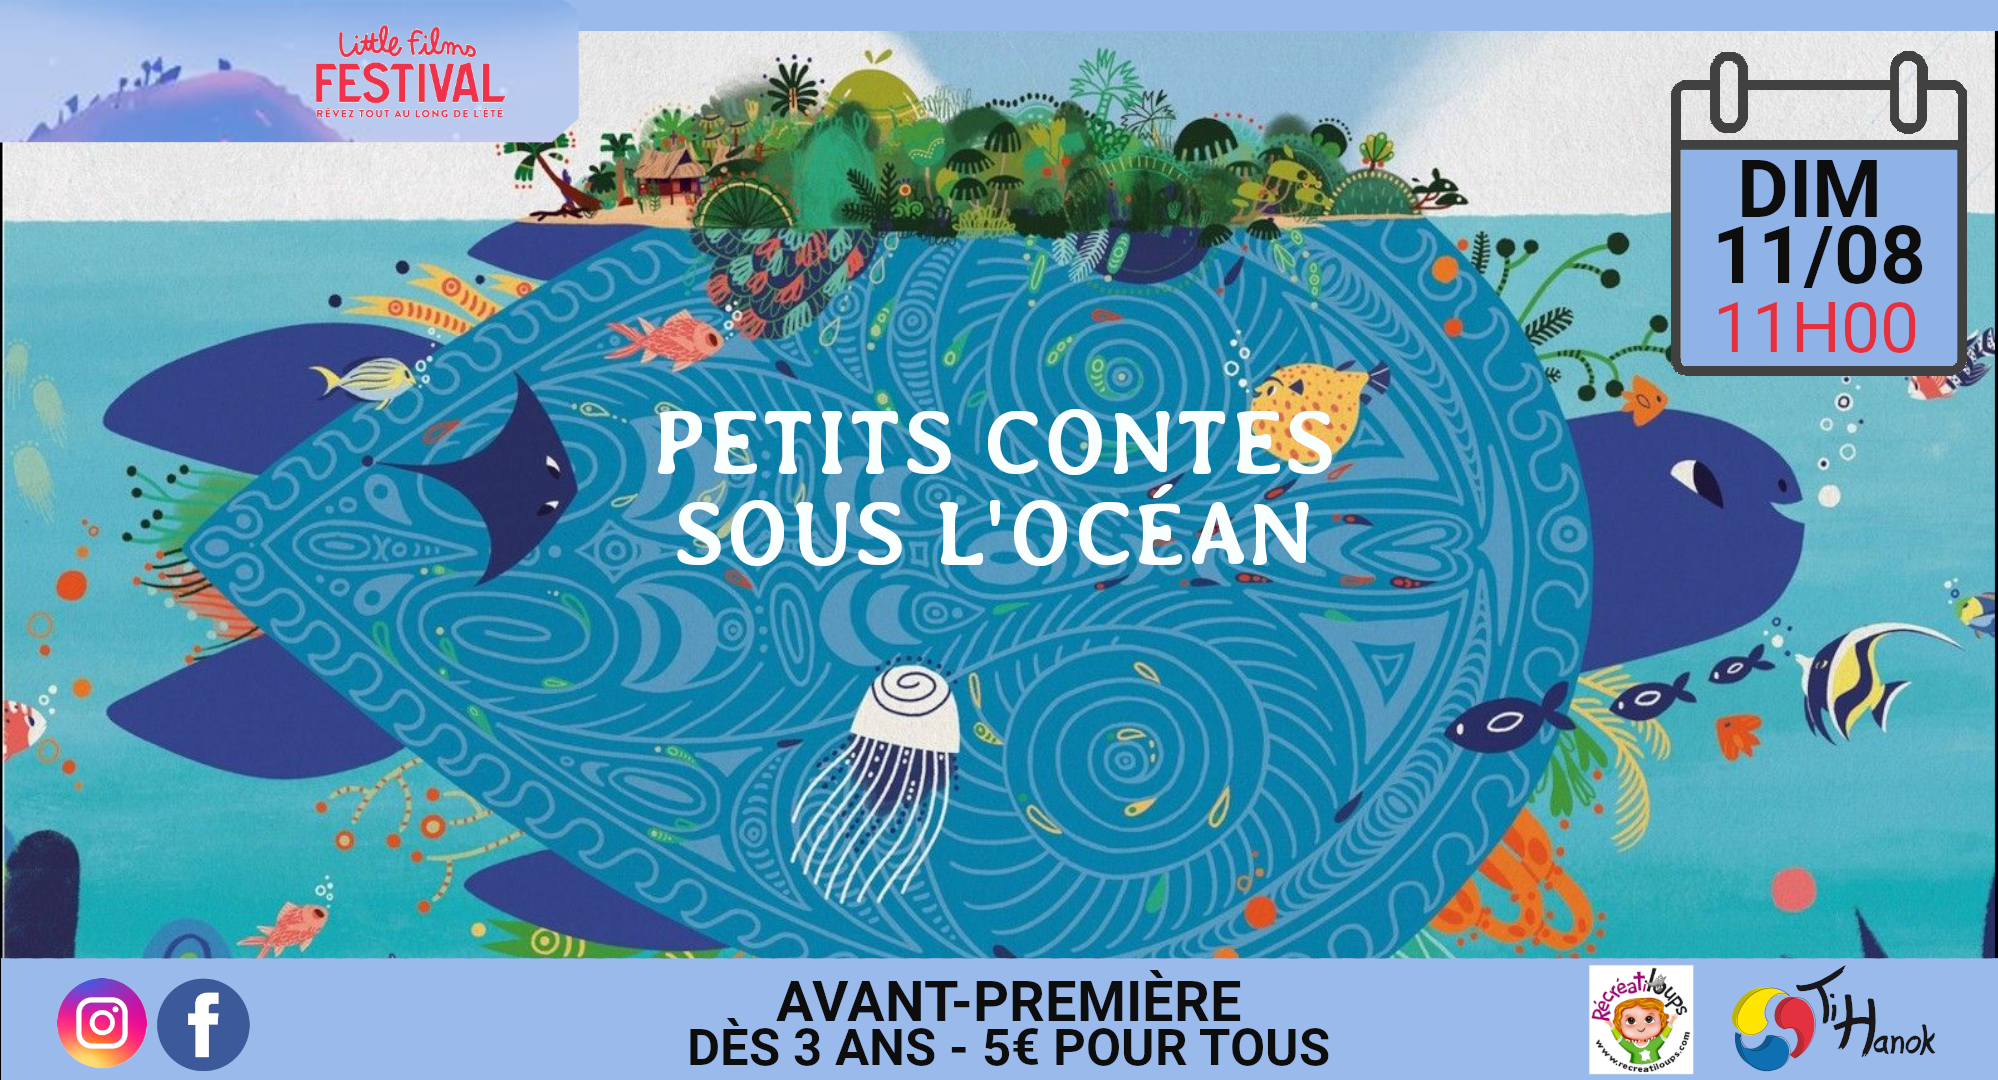 Little film festival : "Petits contes sous l’océan"